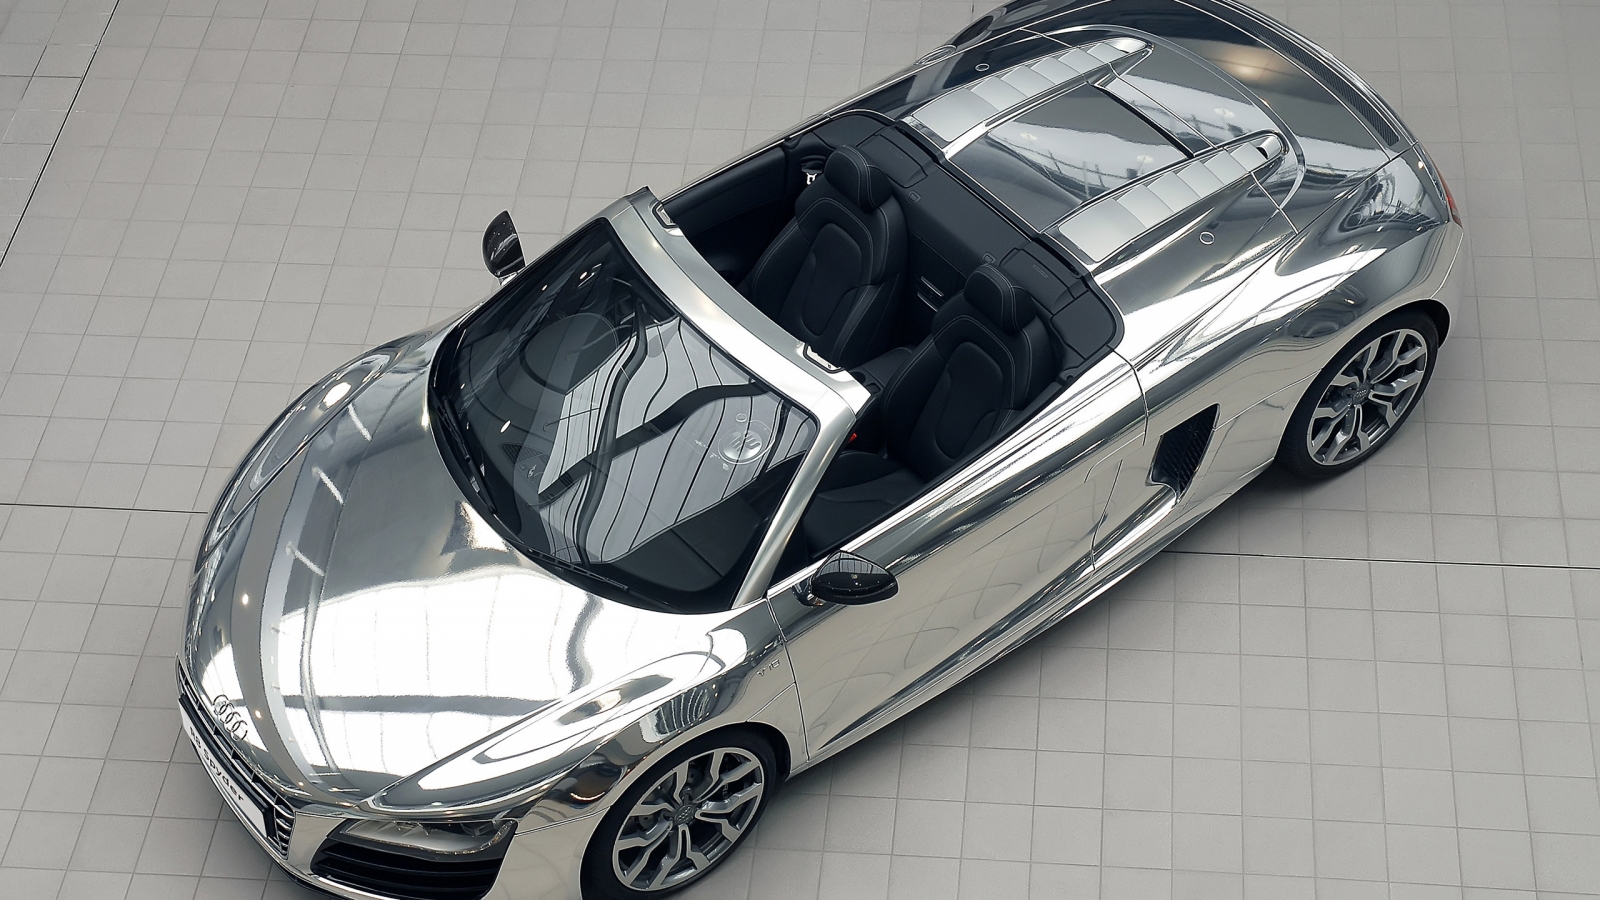 Audi R8 V10 Spyder Chrome for 1600 x 900 HDTV resolution